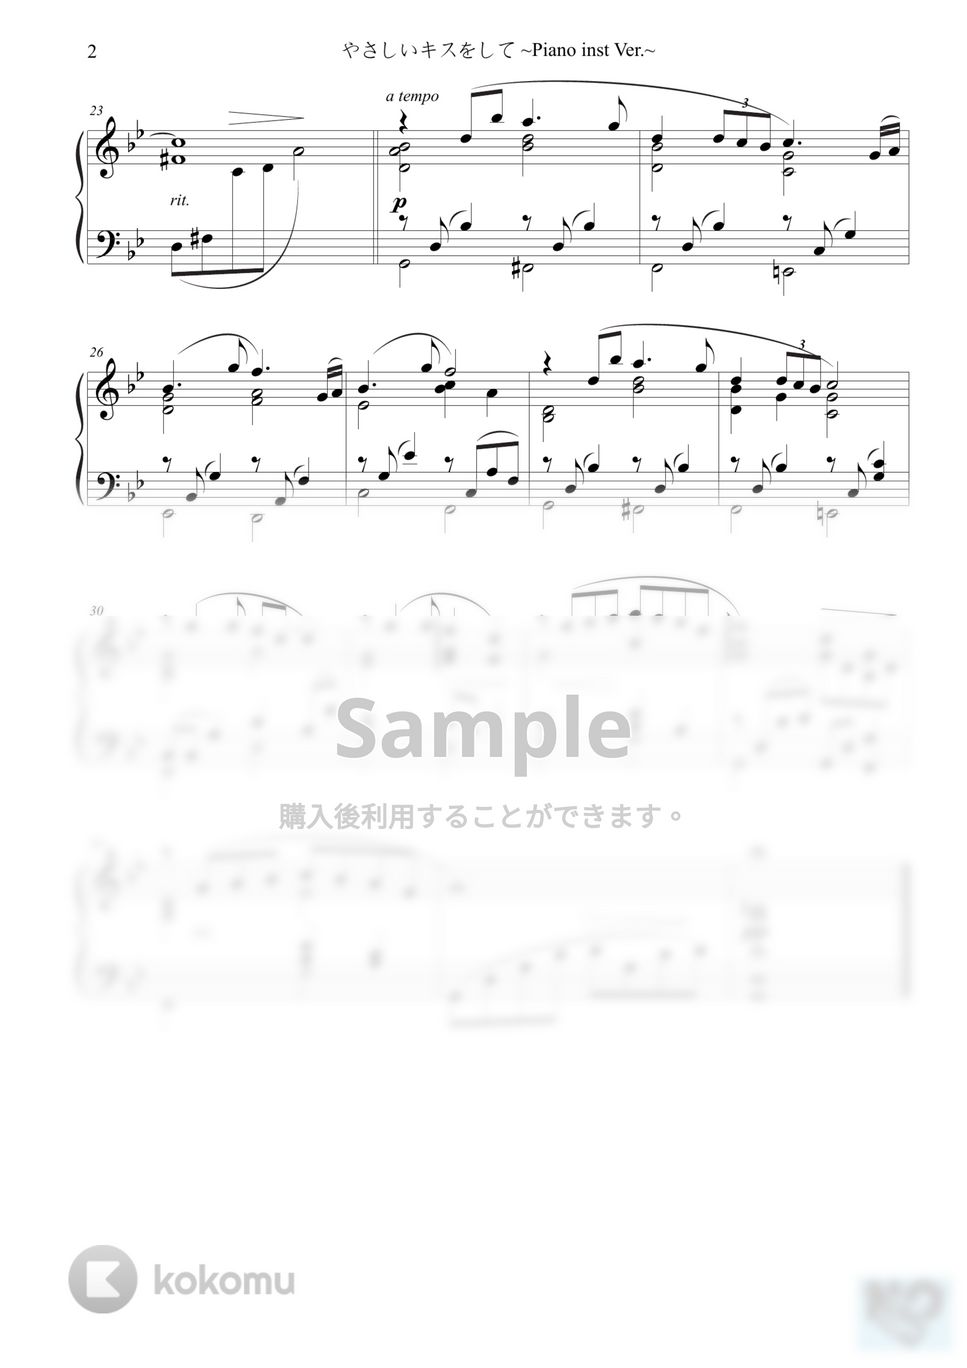 中村正人 - やさしいキスをして ~Piano inst Ver.~ (原典版) by 楊思緯